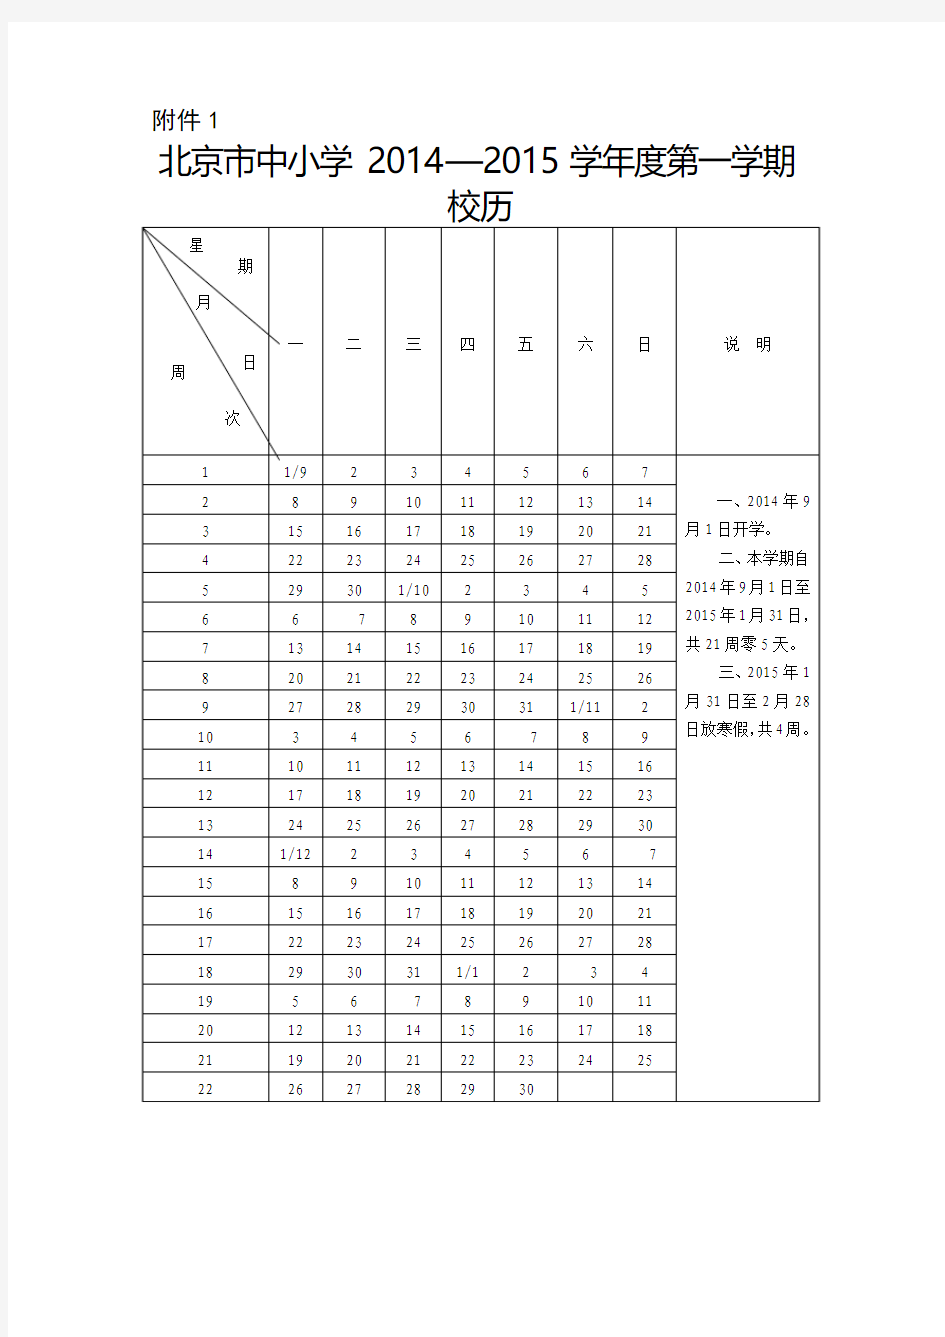 北京市中小学2014—2015学年度校历